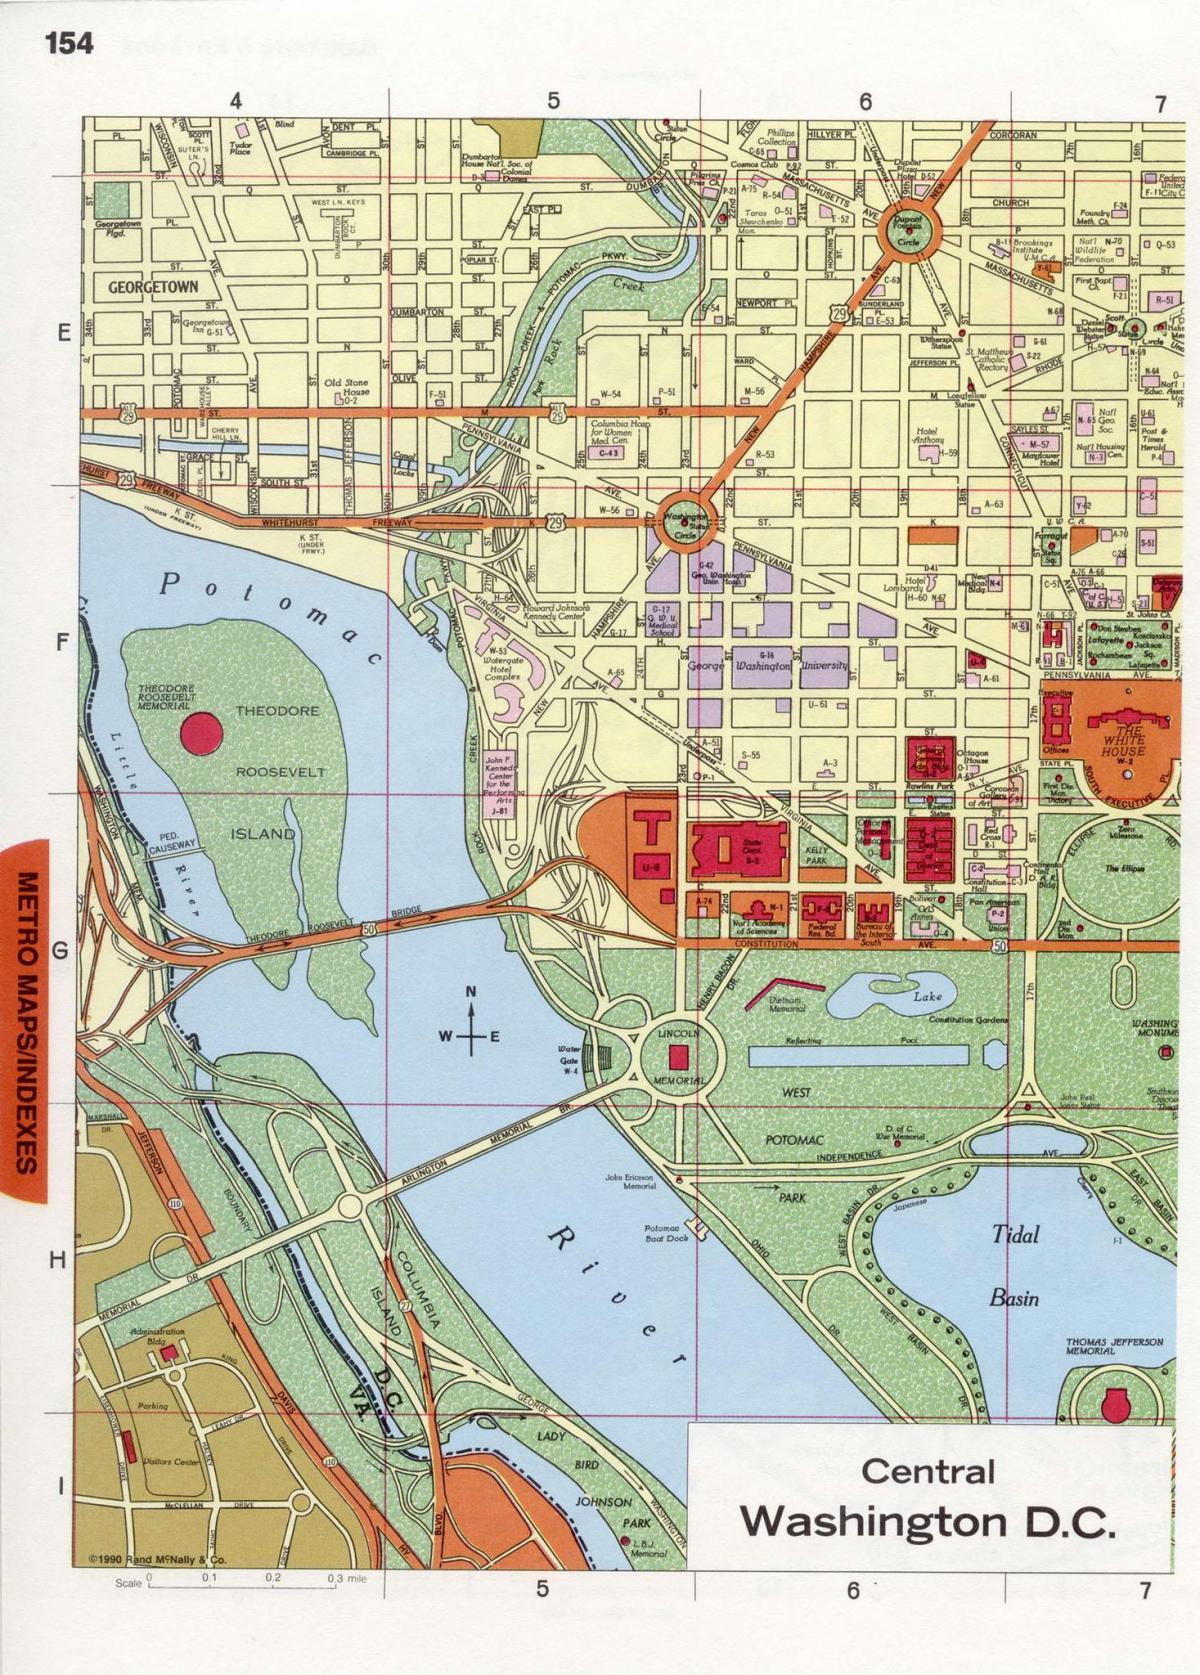 Waszyngton centrum DC mapie